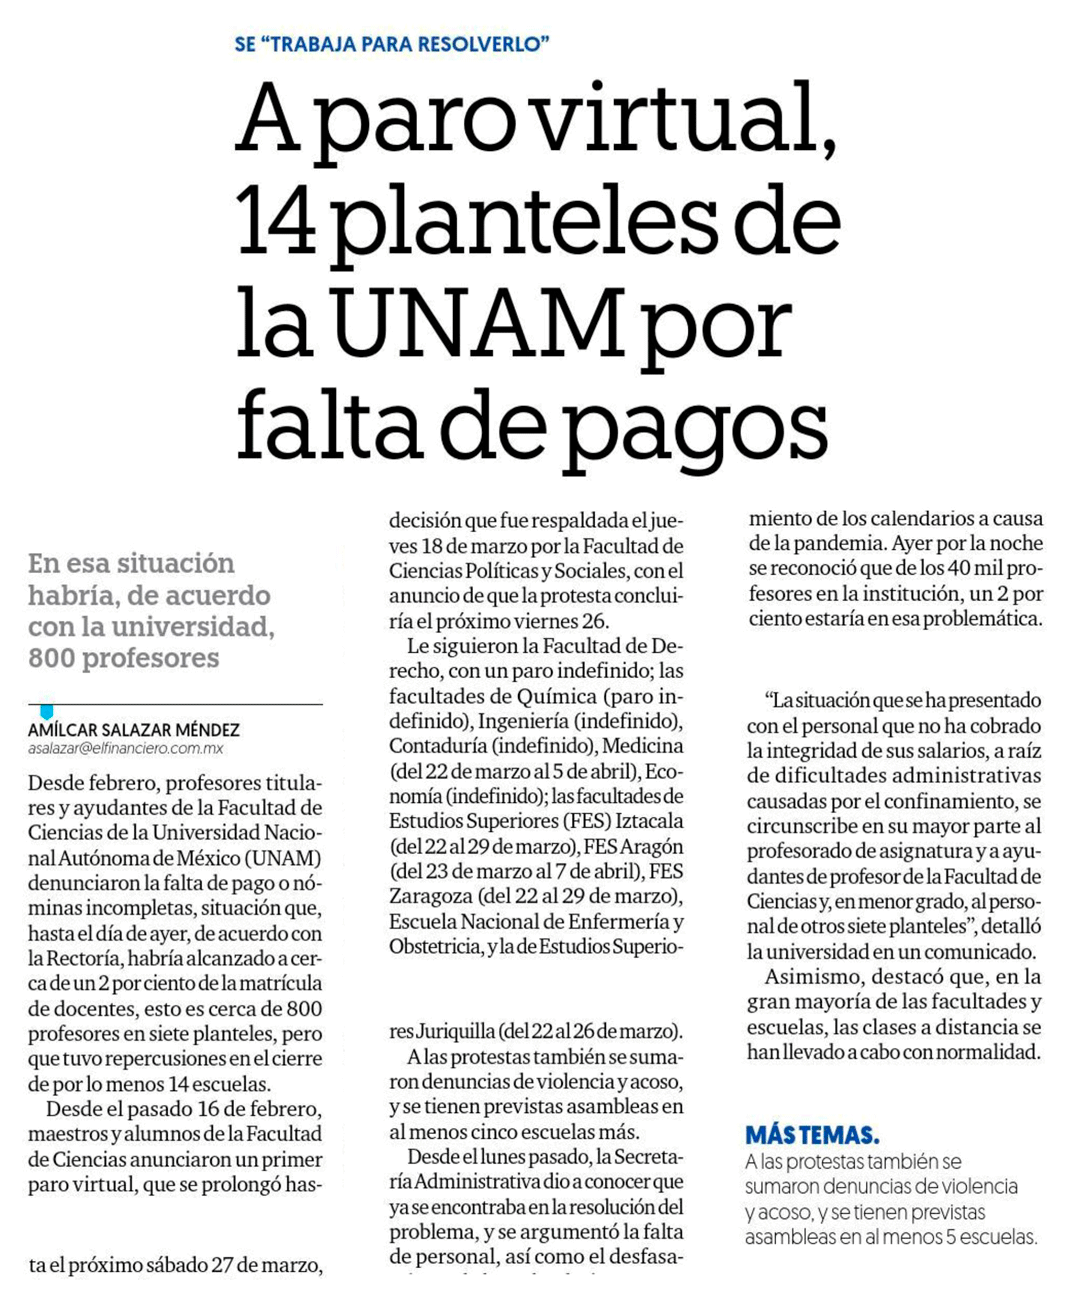 A paro virtual, 14 planteles de la UNAM por falta de pagos